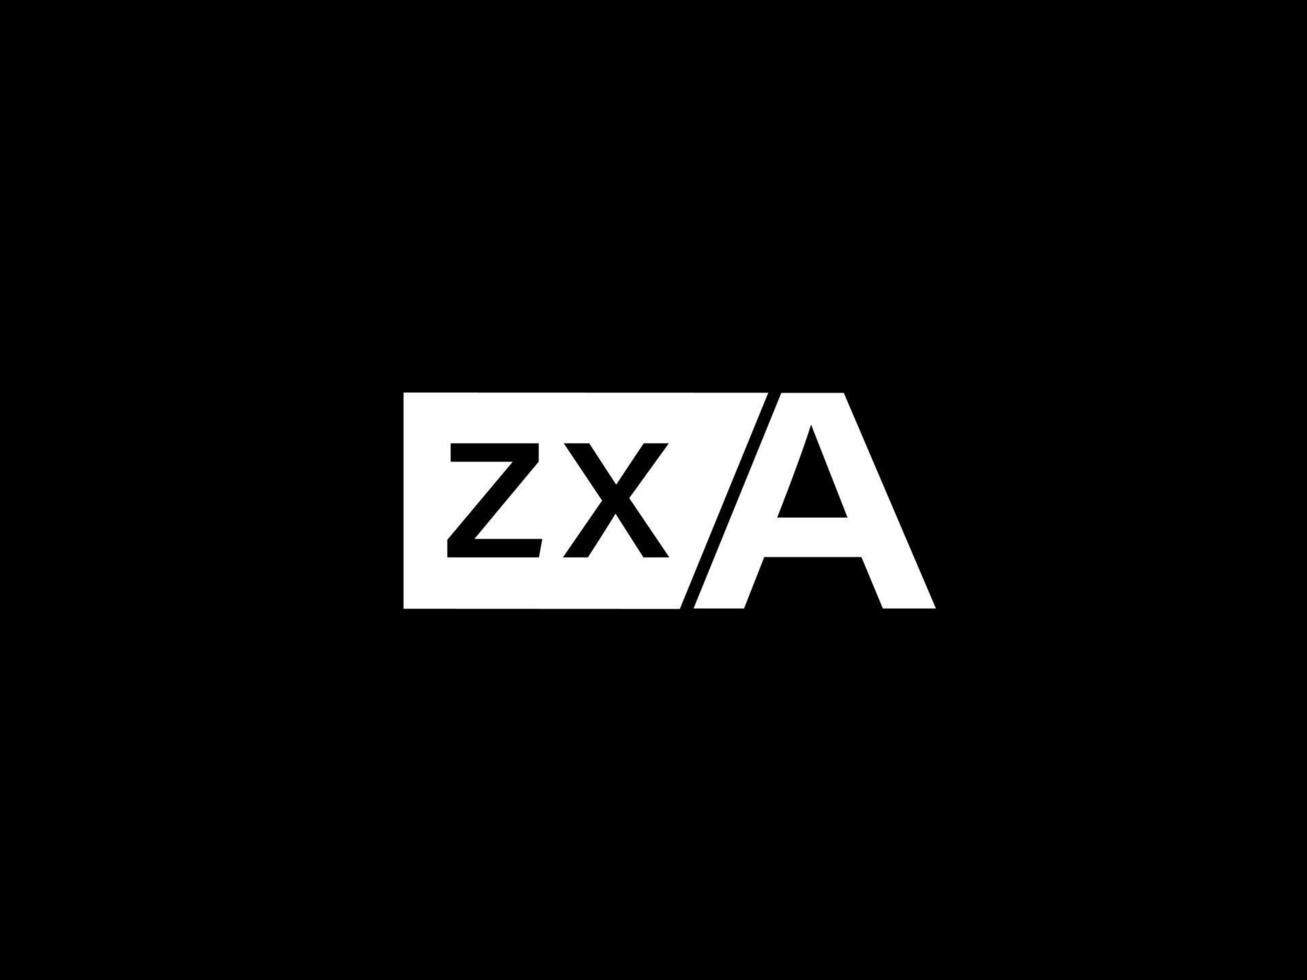 zxa logotyp och grafik design vektor konst, ikoner isolerat på svart bakgrund